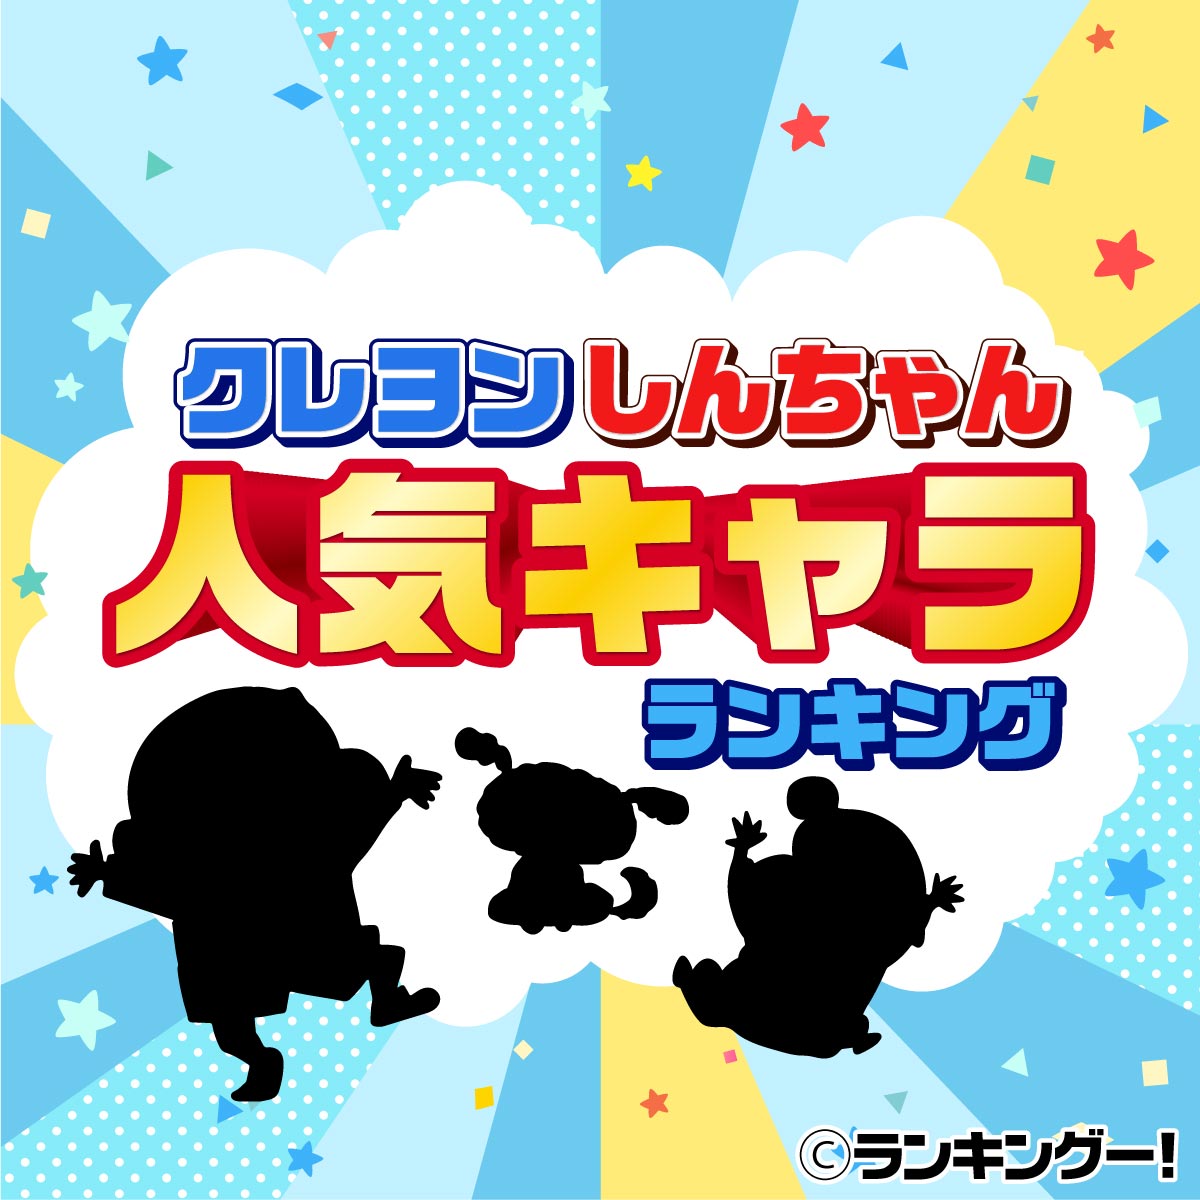 クレヨンしんちゃんキャラクター人気ランキングtop20 2020年最新版 16 20位 ランキングー